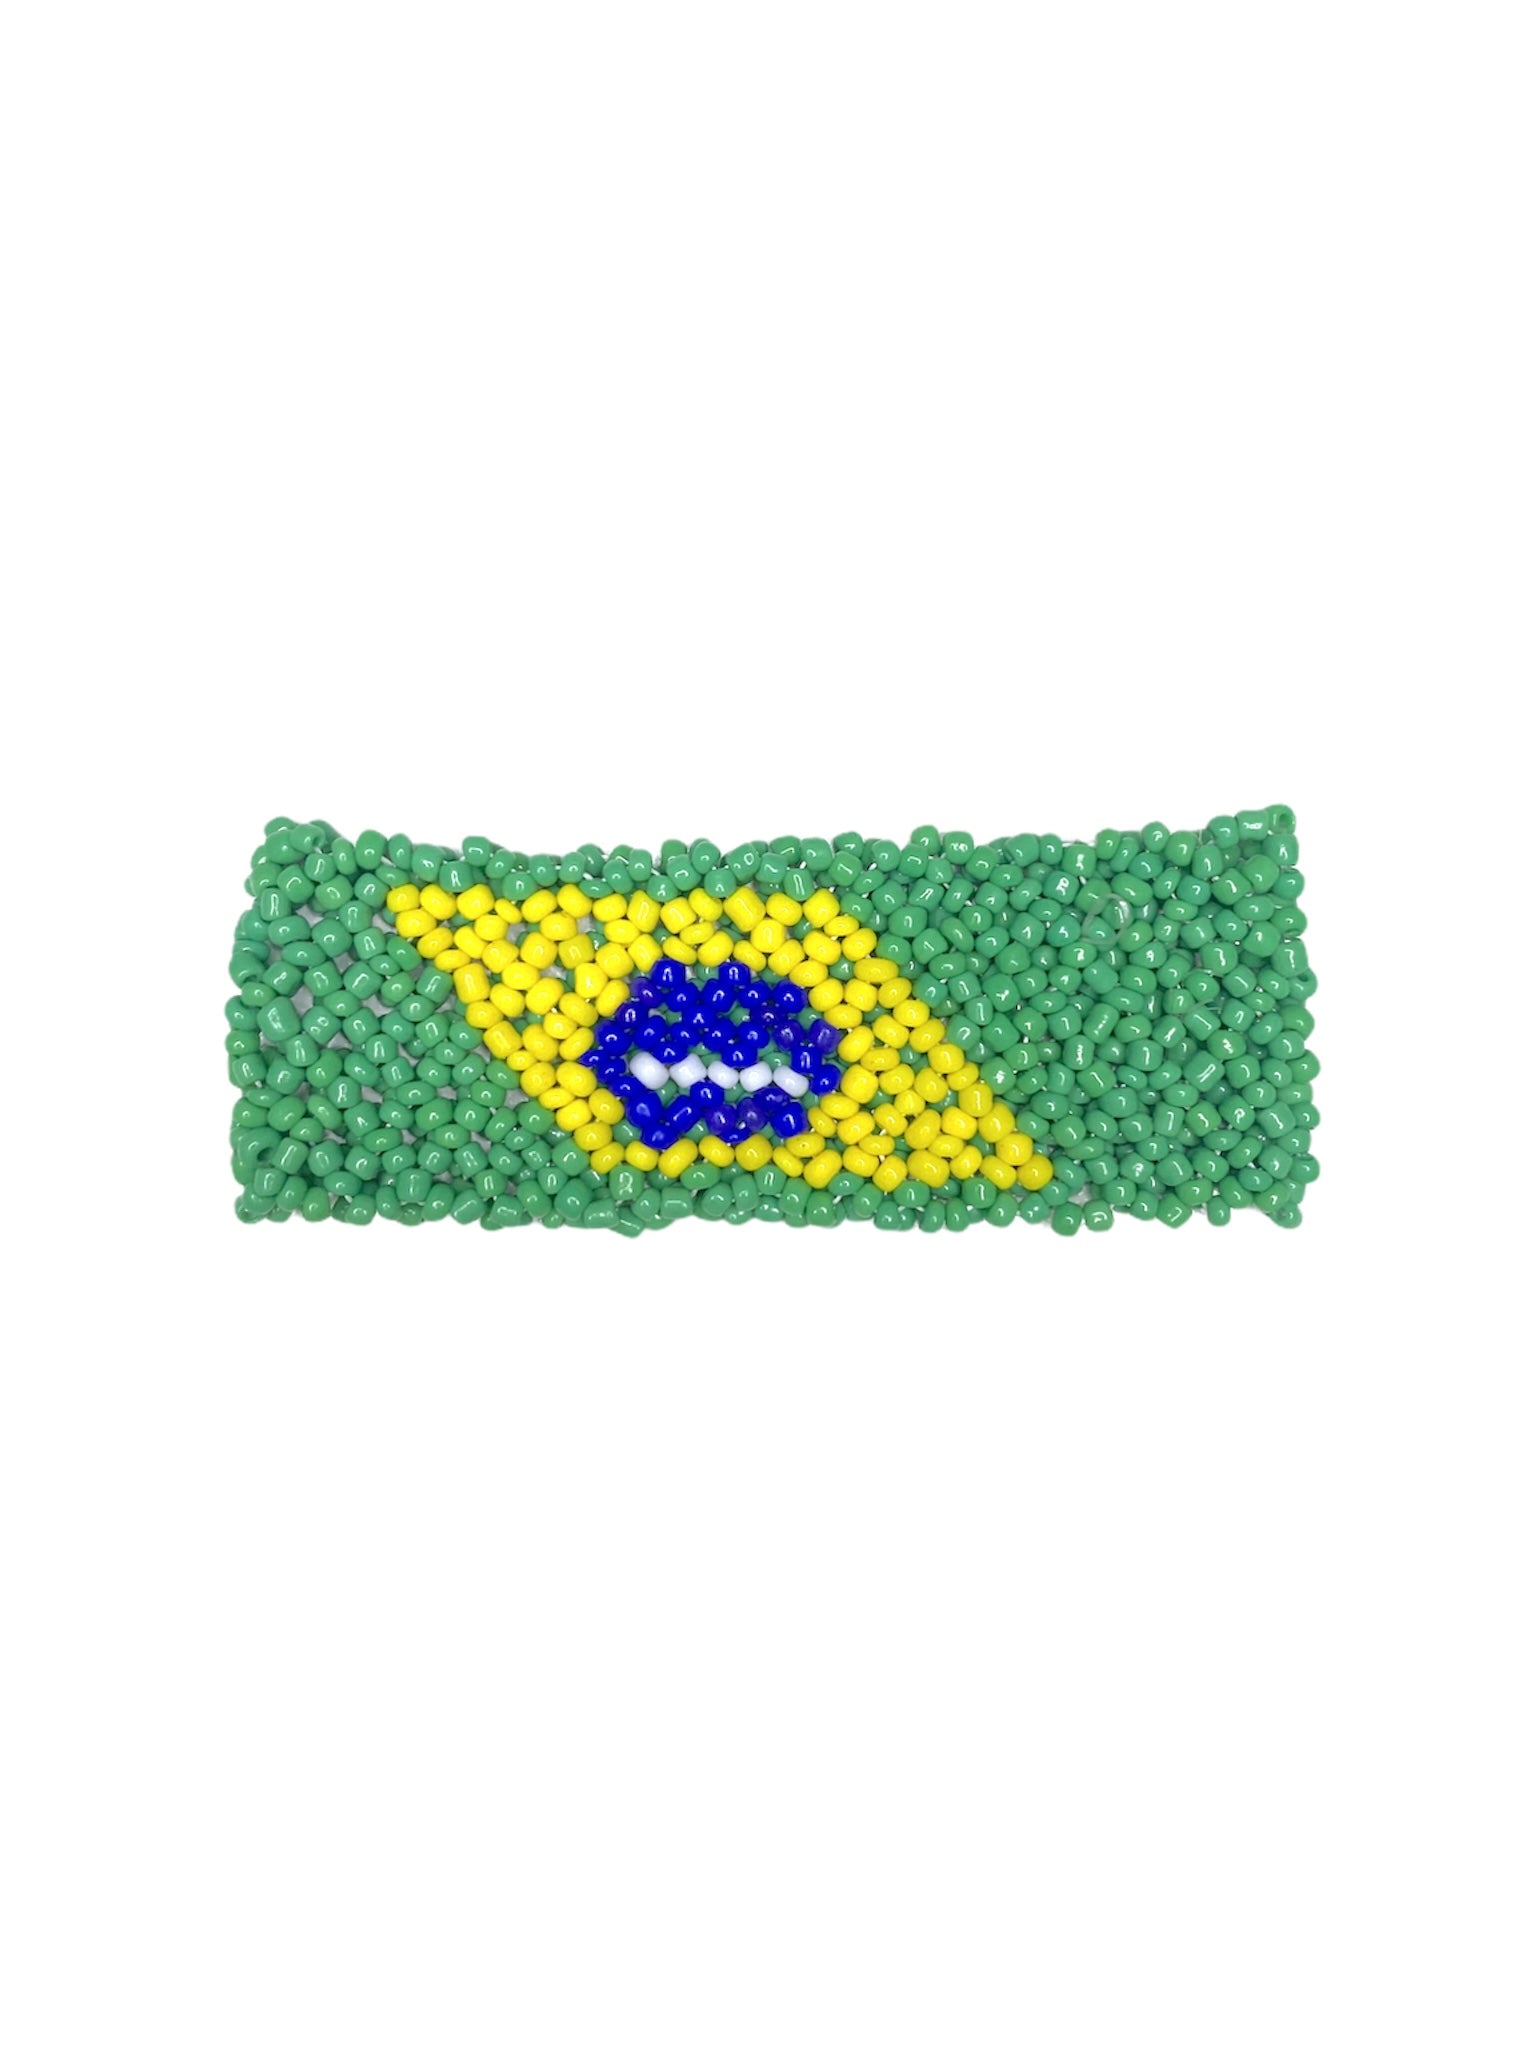 Brazil flag bracelet (x12)